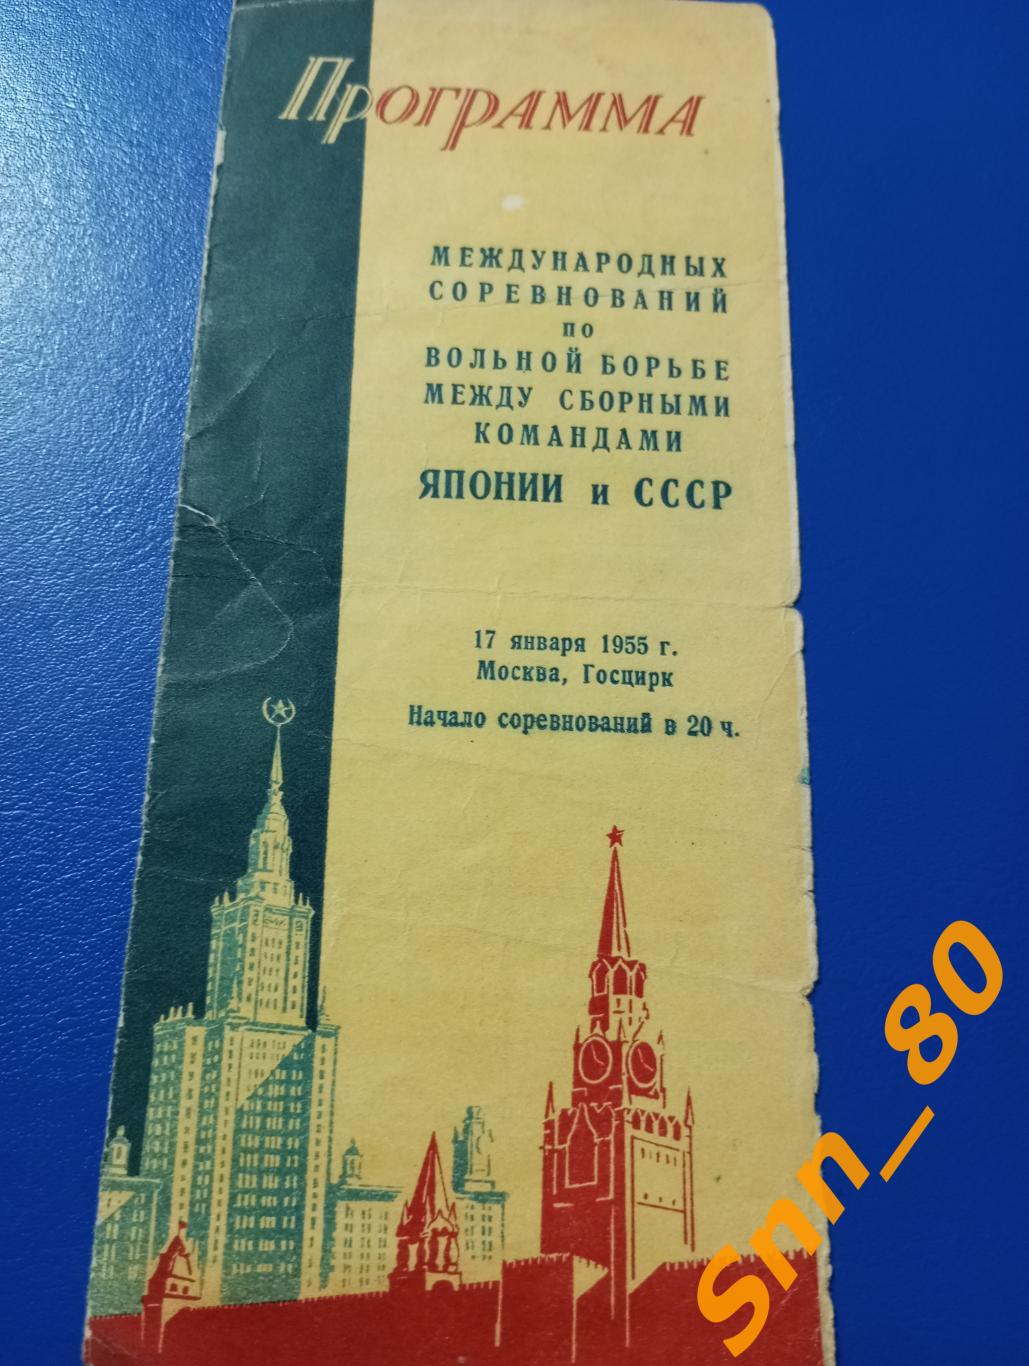 Вольная борьба Международная встреча СССР - Япония 17 января 1955 Москва Госцирк